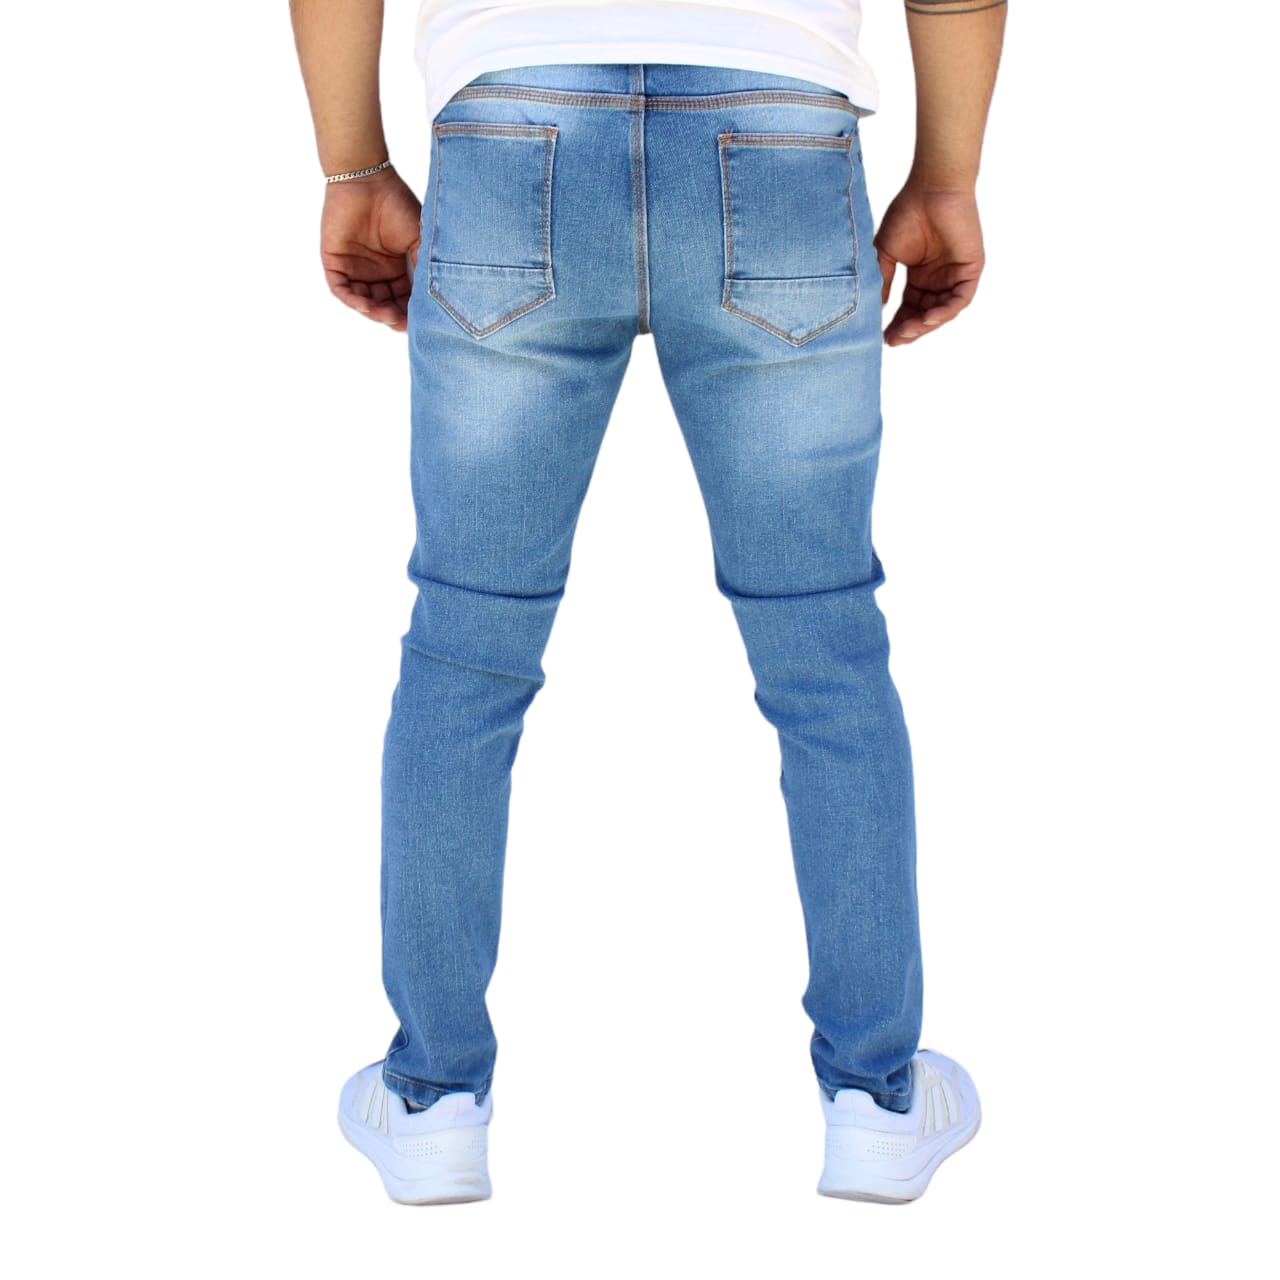 Jeans Pantalon de Mezclilla Deslavado Strech Azul accesorios de